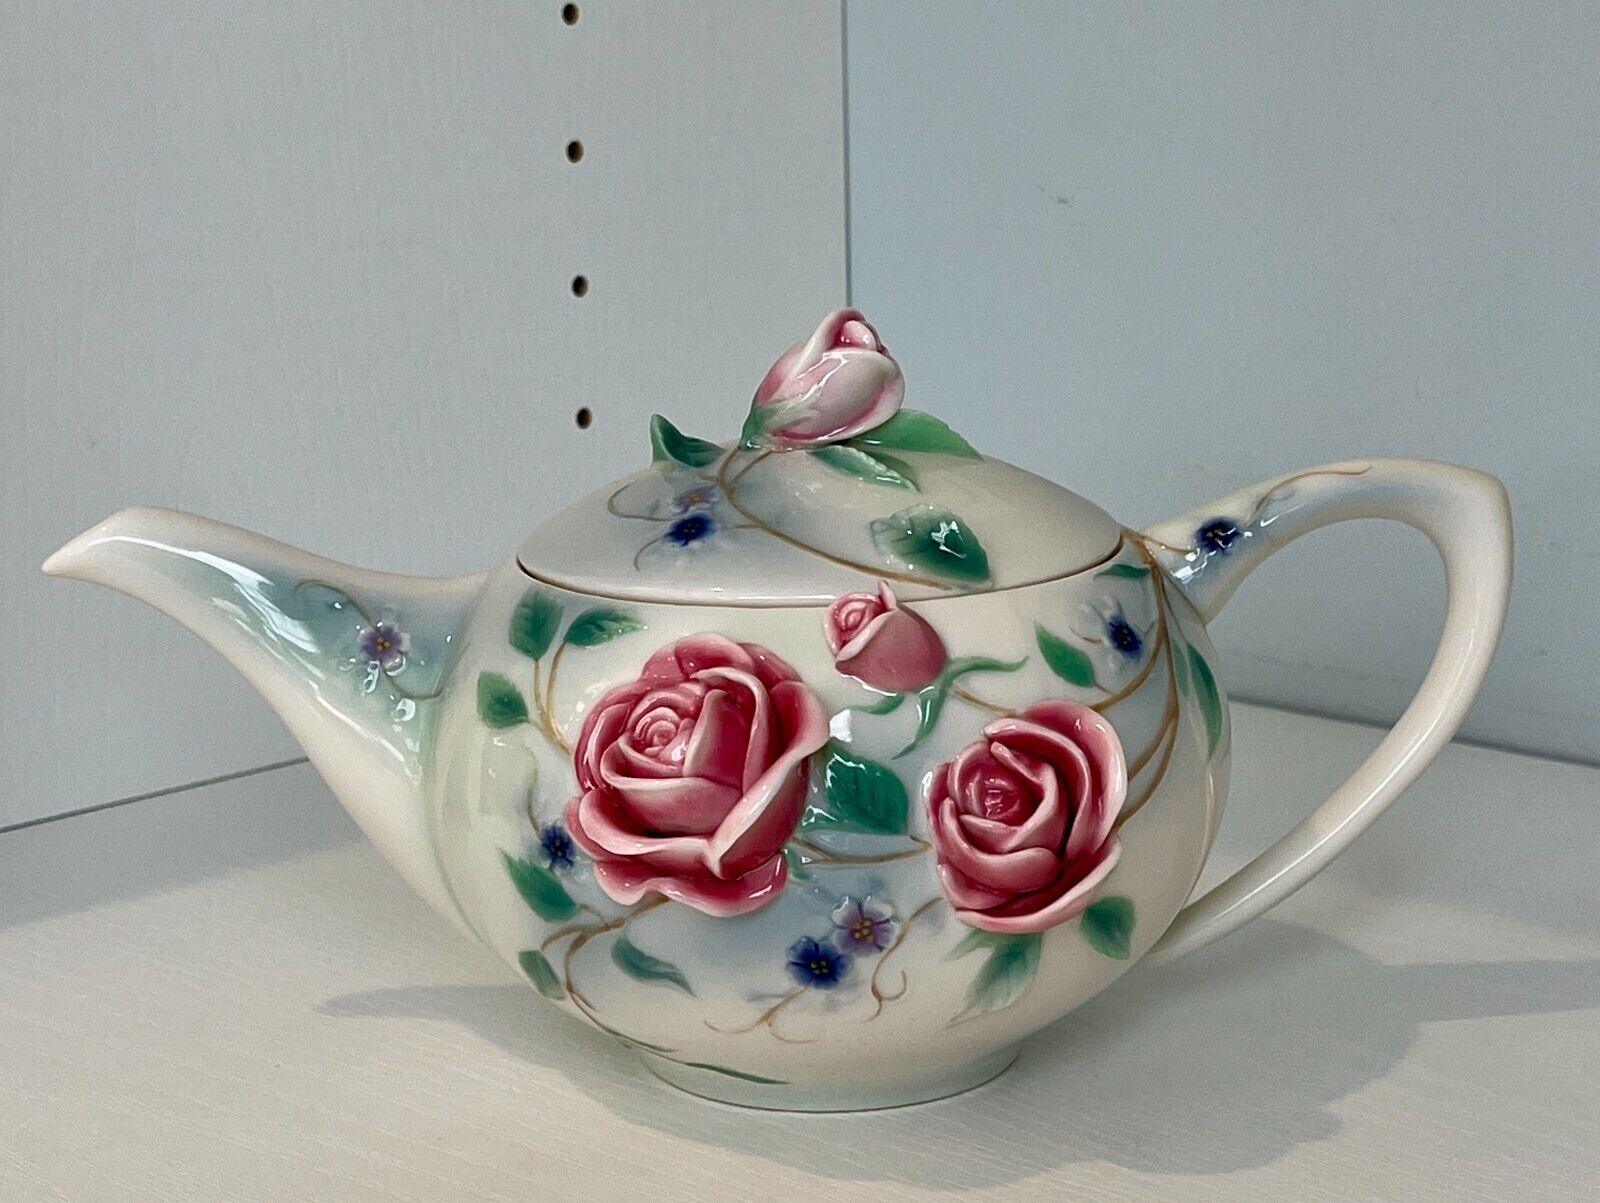 Franz-English Garden Rose Design Sculptured Porcelain Teapot- FZ00697